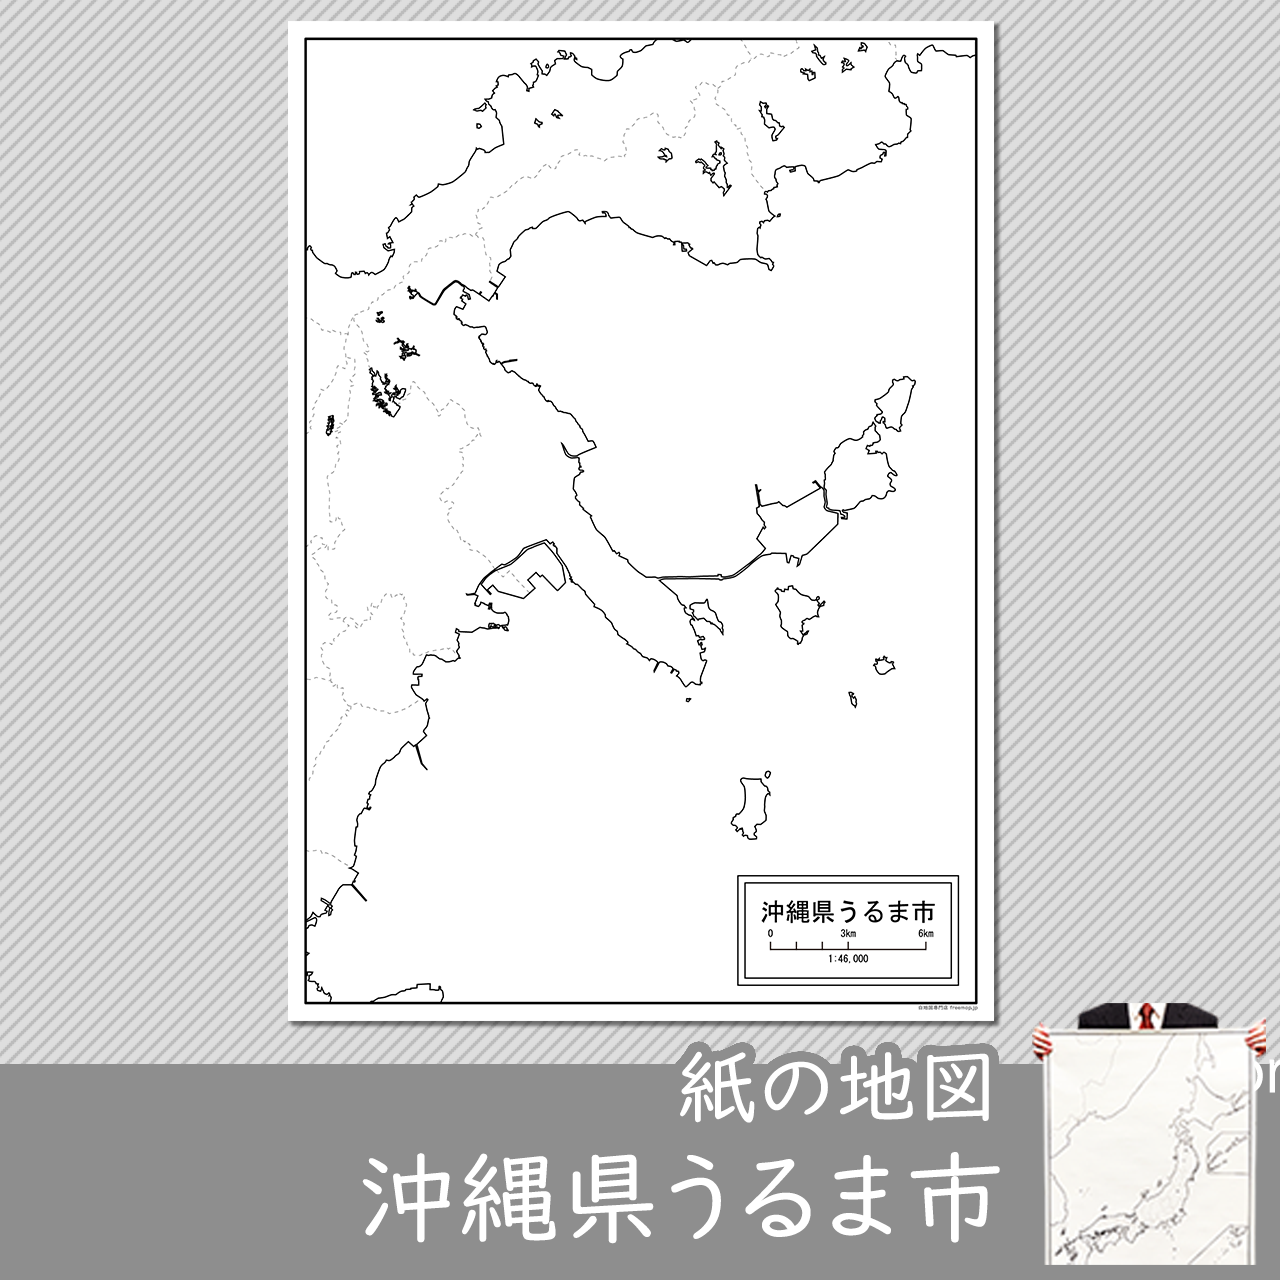 うるま市の紙の白地図のサムネイル